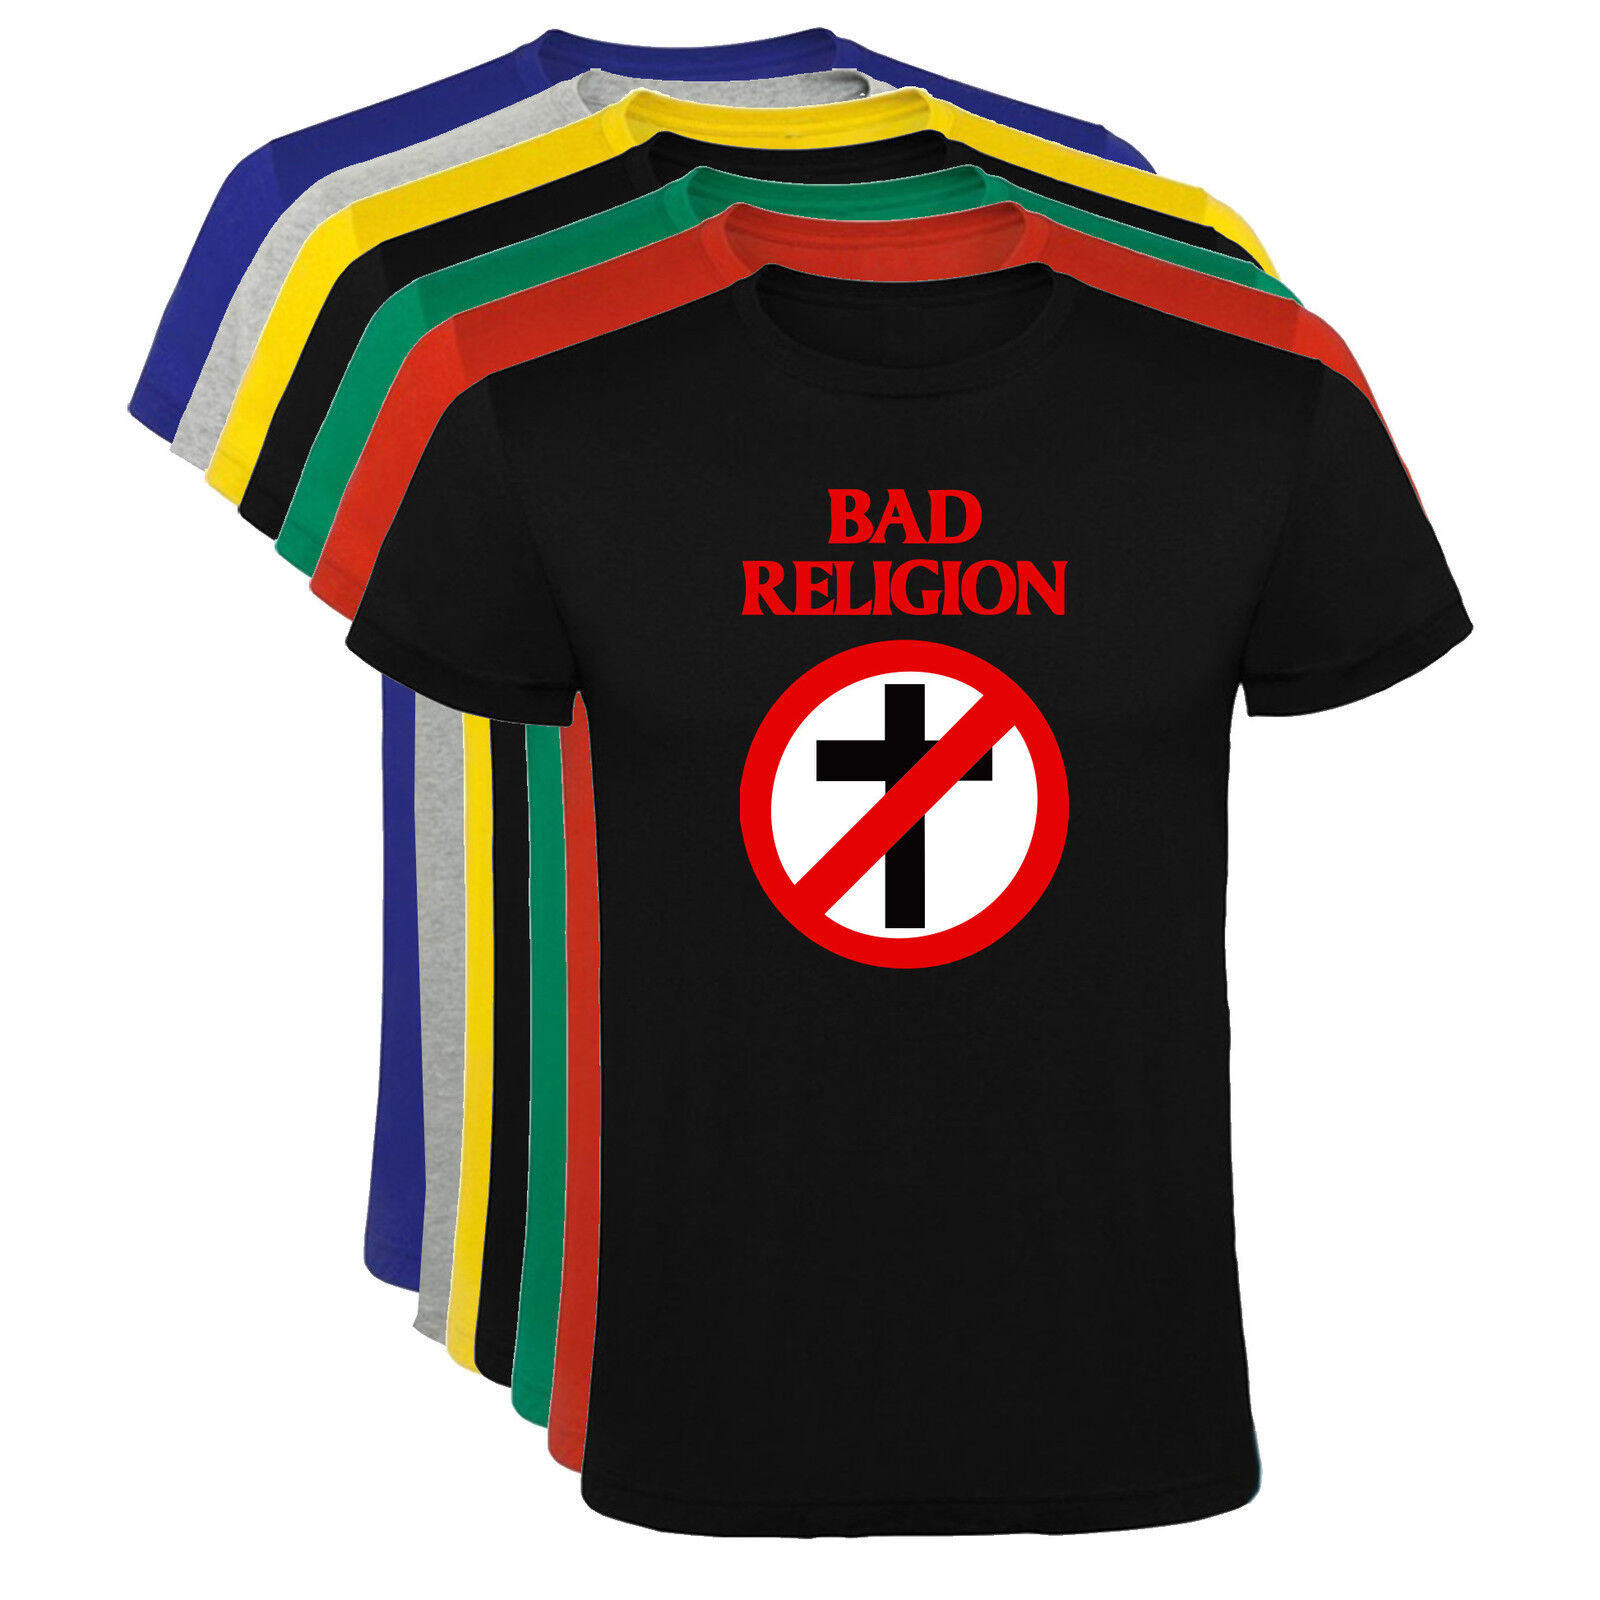 Camiseta Bad Religion Hombre varias tallas y colores a106